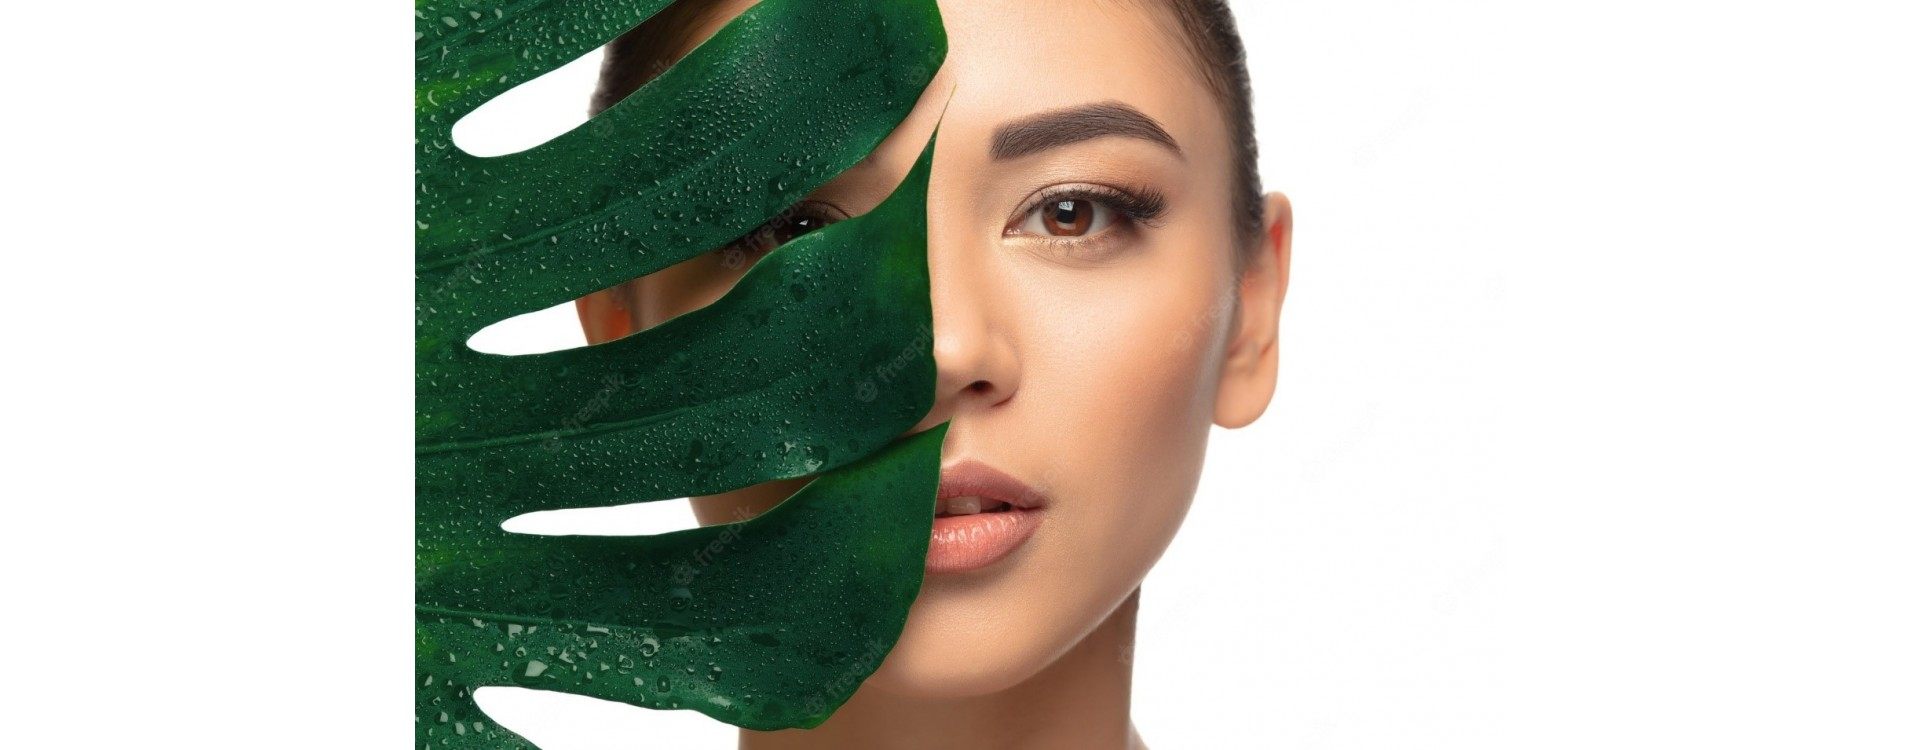 Une peau éclatante grâce aux produits biologiques : guide des avantages de la beauté naturelle